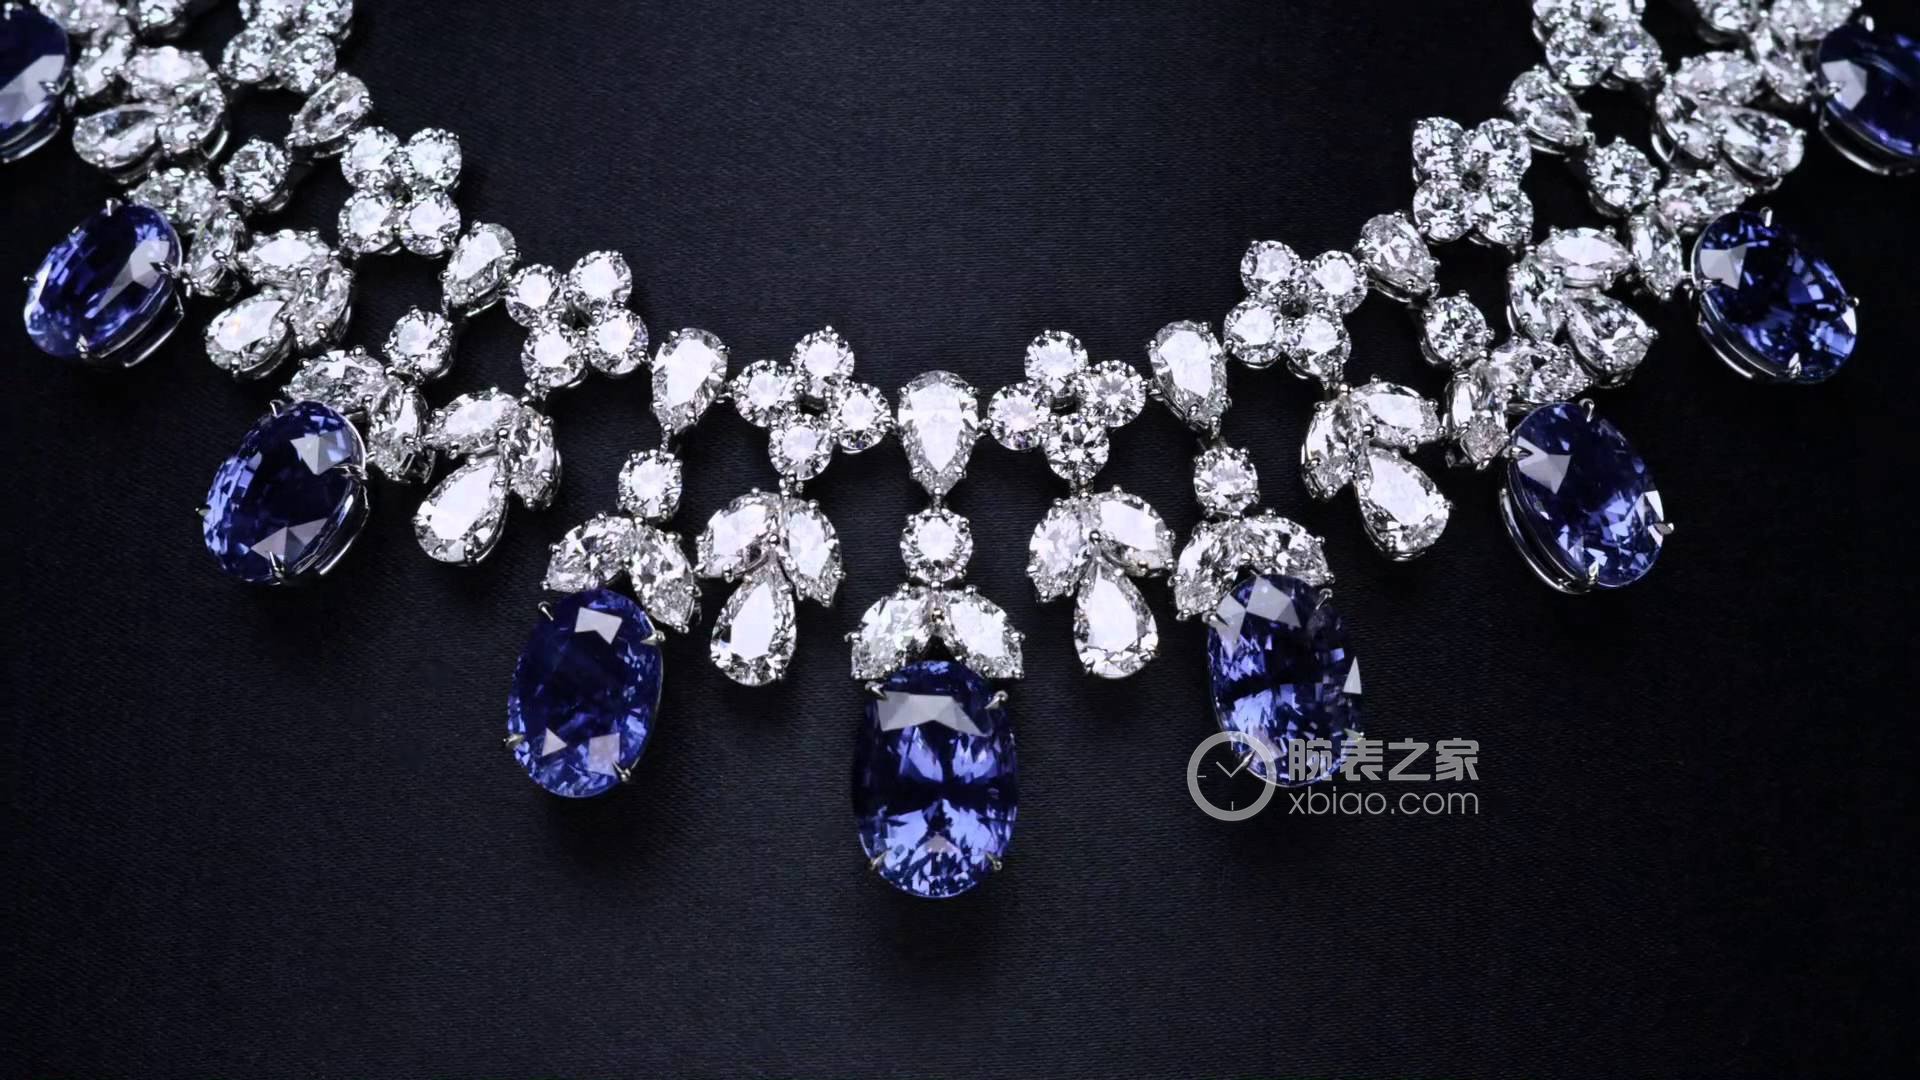 海瑞温斯顿INCREDIBLES高级珠宝系列Cascading 蓝宝石钻石项链项链